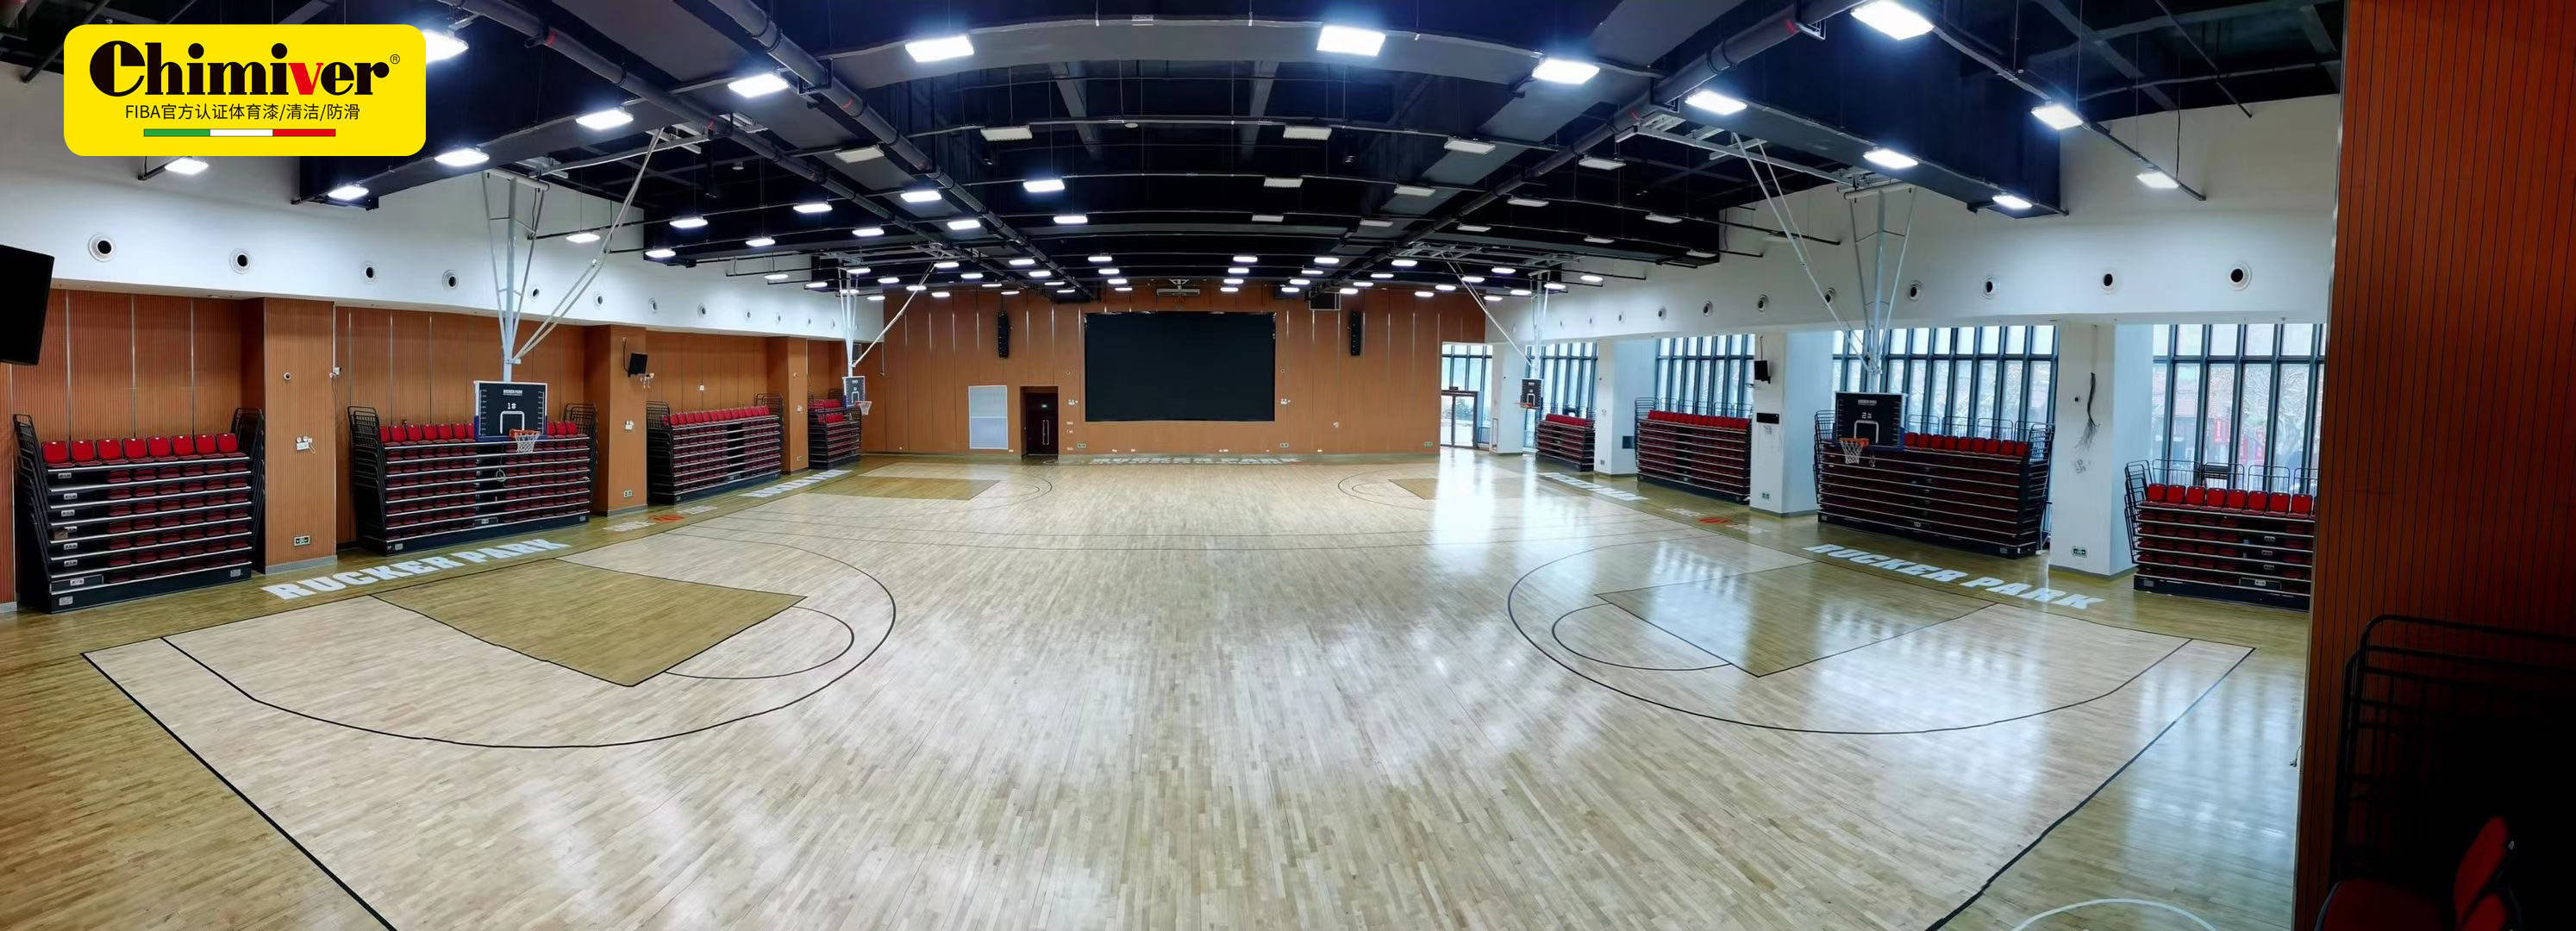 篮球馆地板翻新改色效果,上海普陀体育馆运动木地板保养施工案例